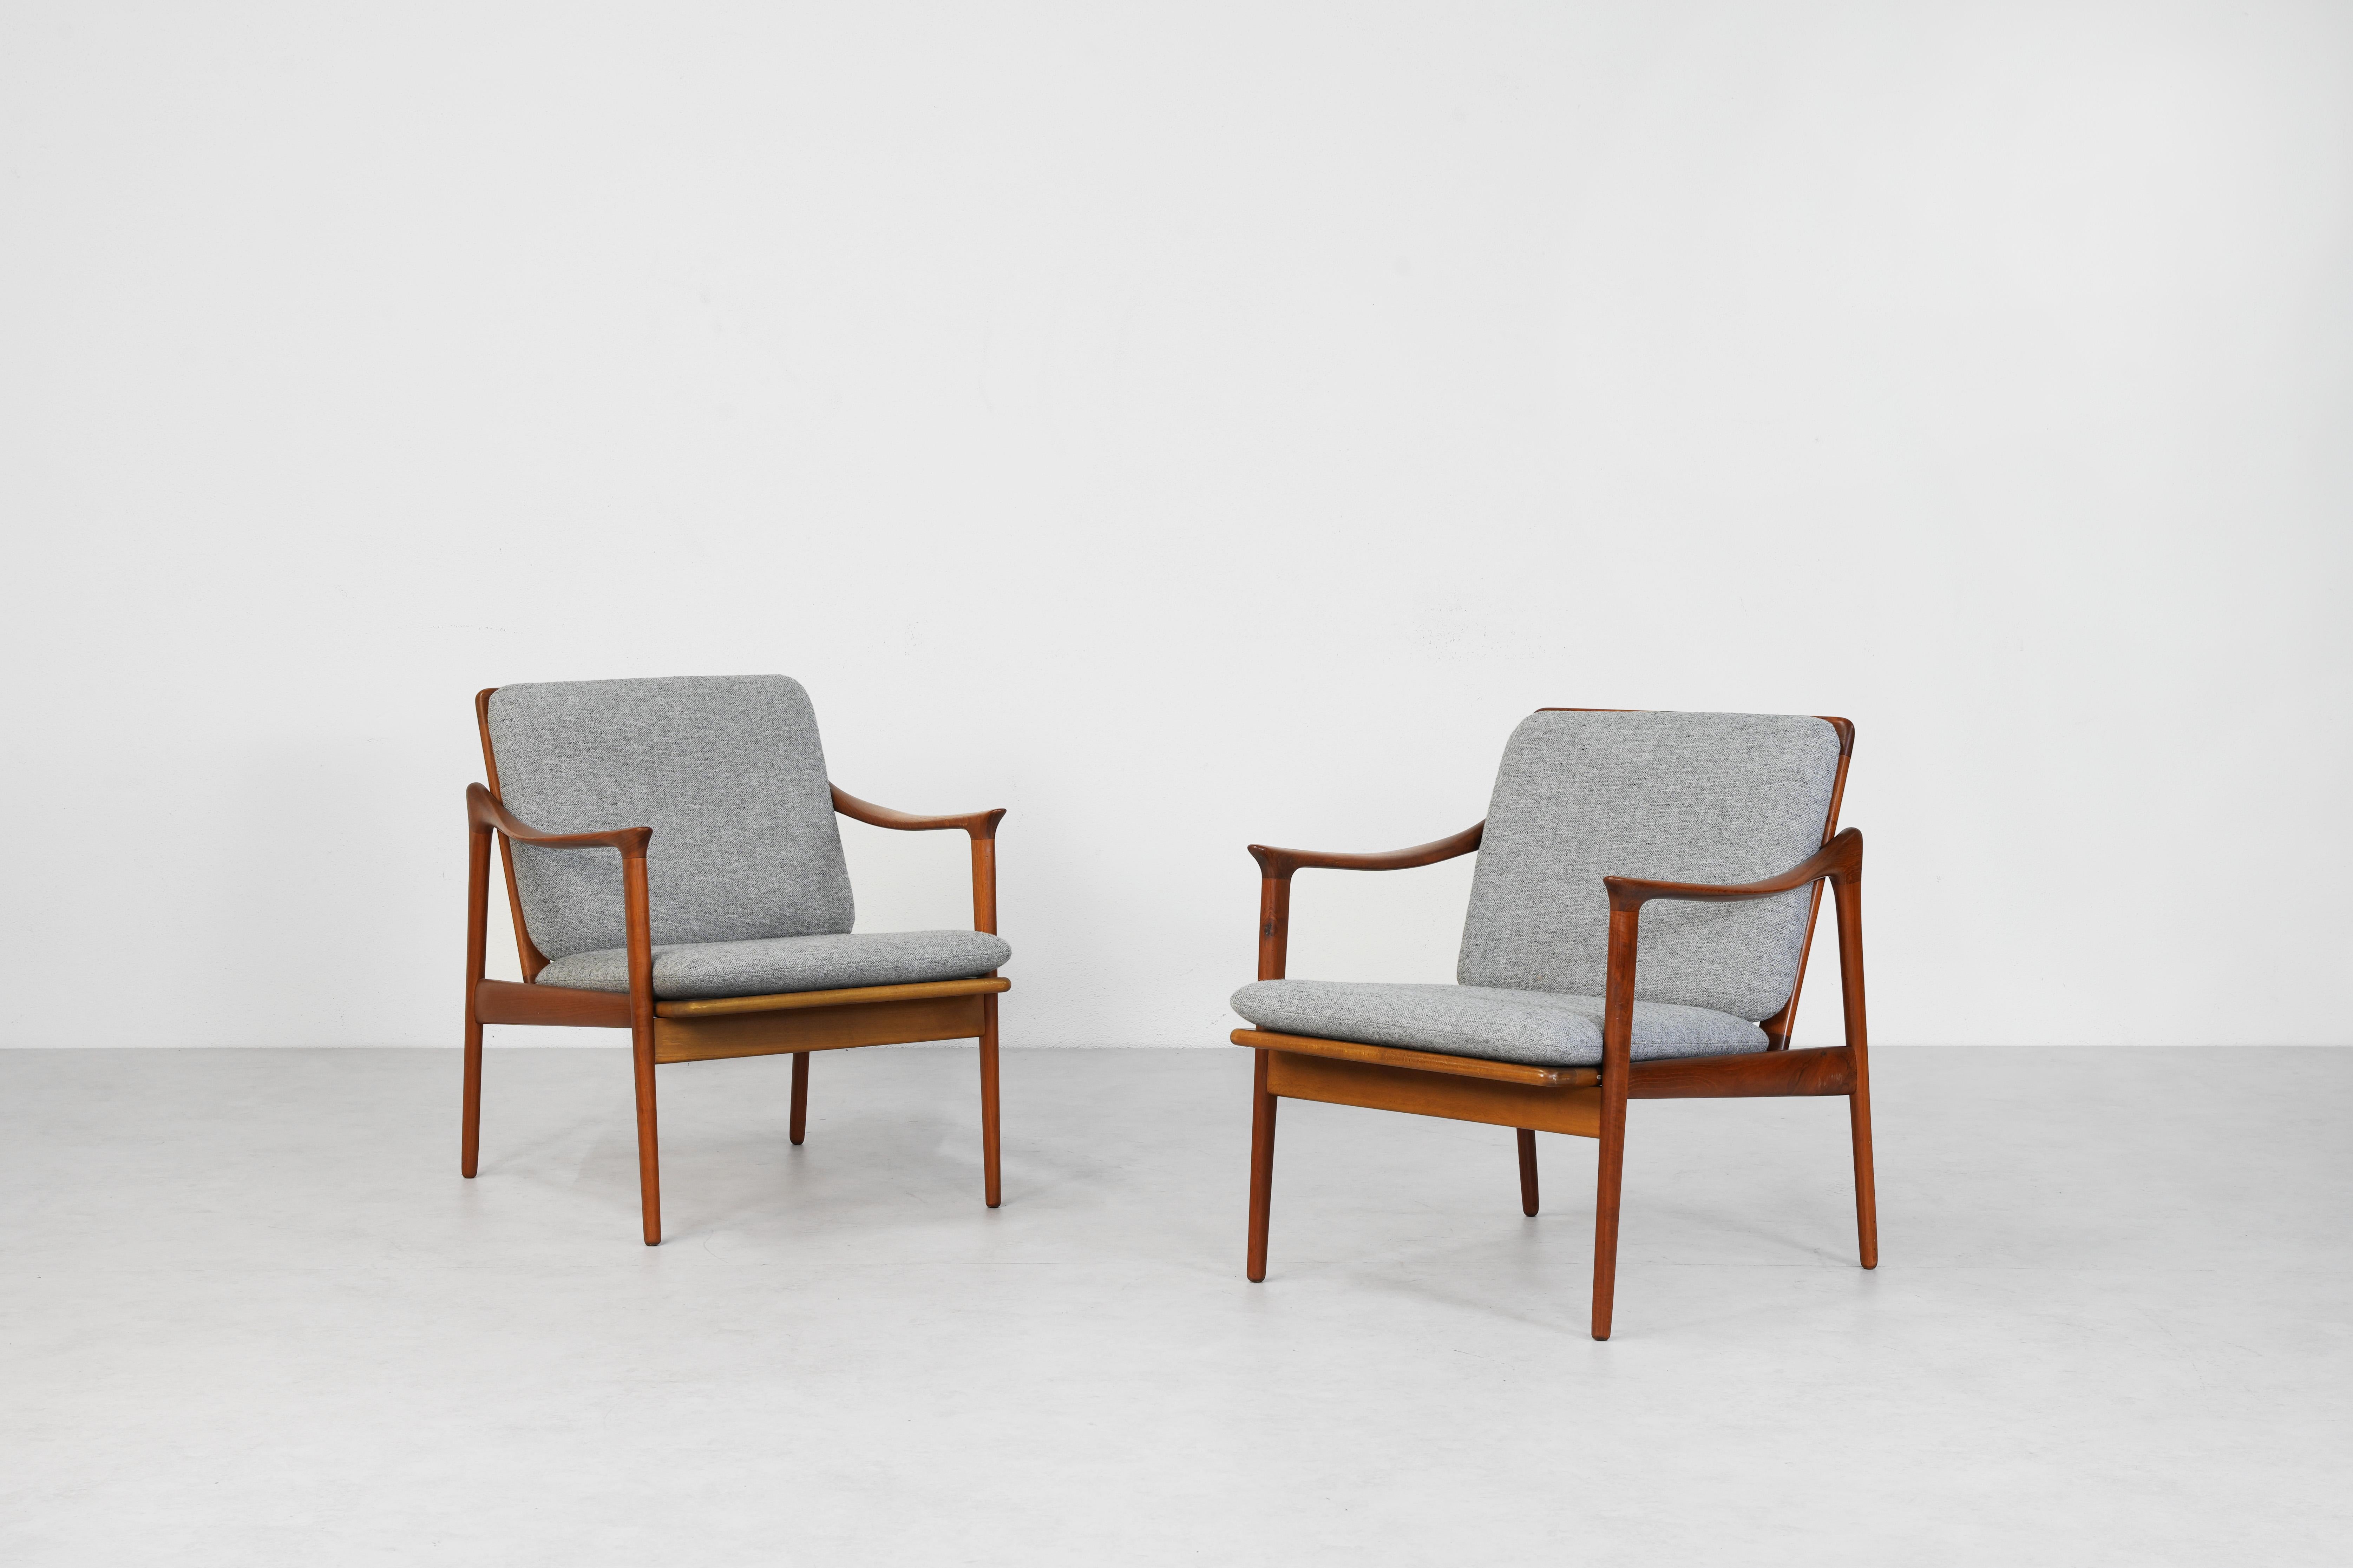 Magnifique paire de chaises de salon et de détente conçues par Fredrik A. Kayser et fabriquées par Vatne Møbler dans les années 1960 en Norvège. Les deux chaises présentent une structure en bois de teck avec d'extraordinaires accoudoirs pivotants et